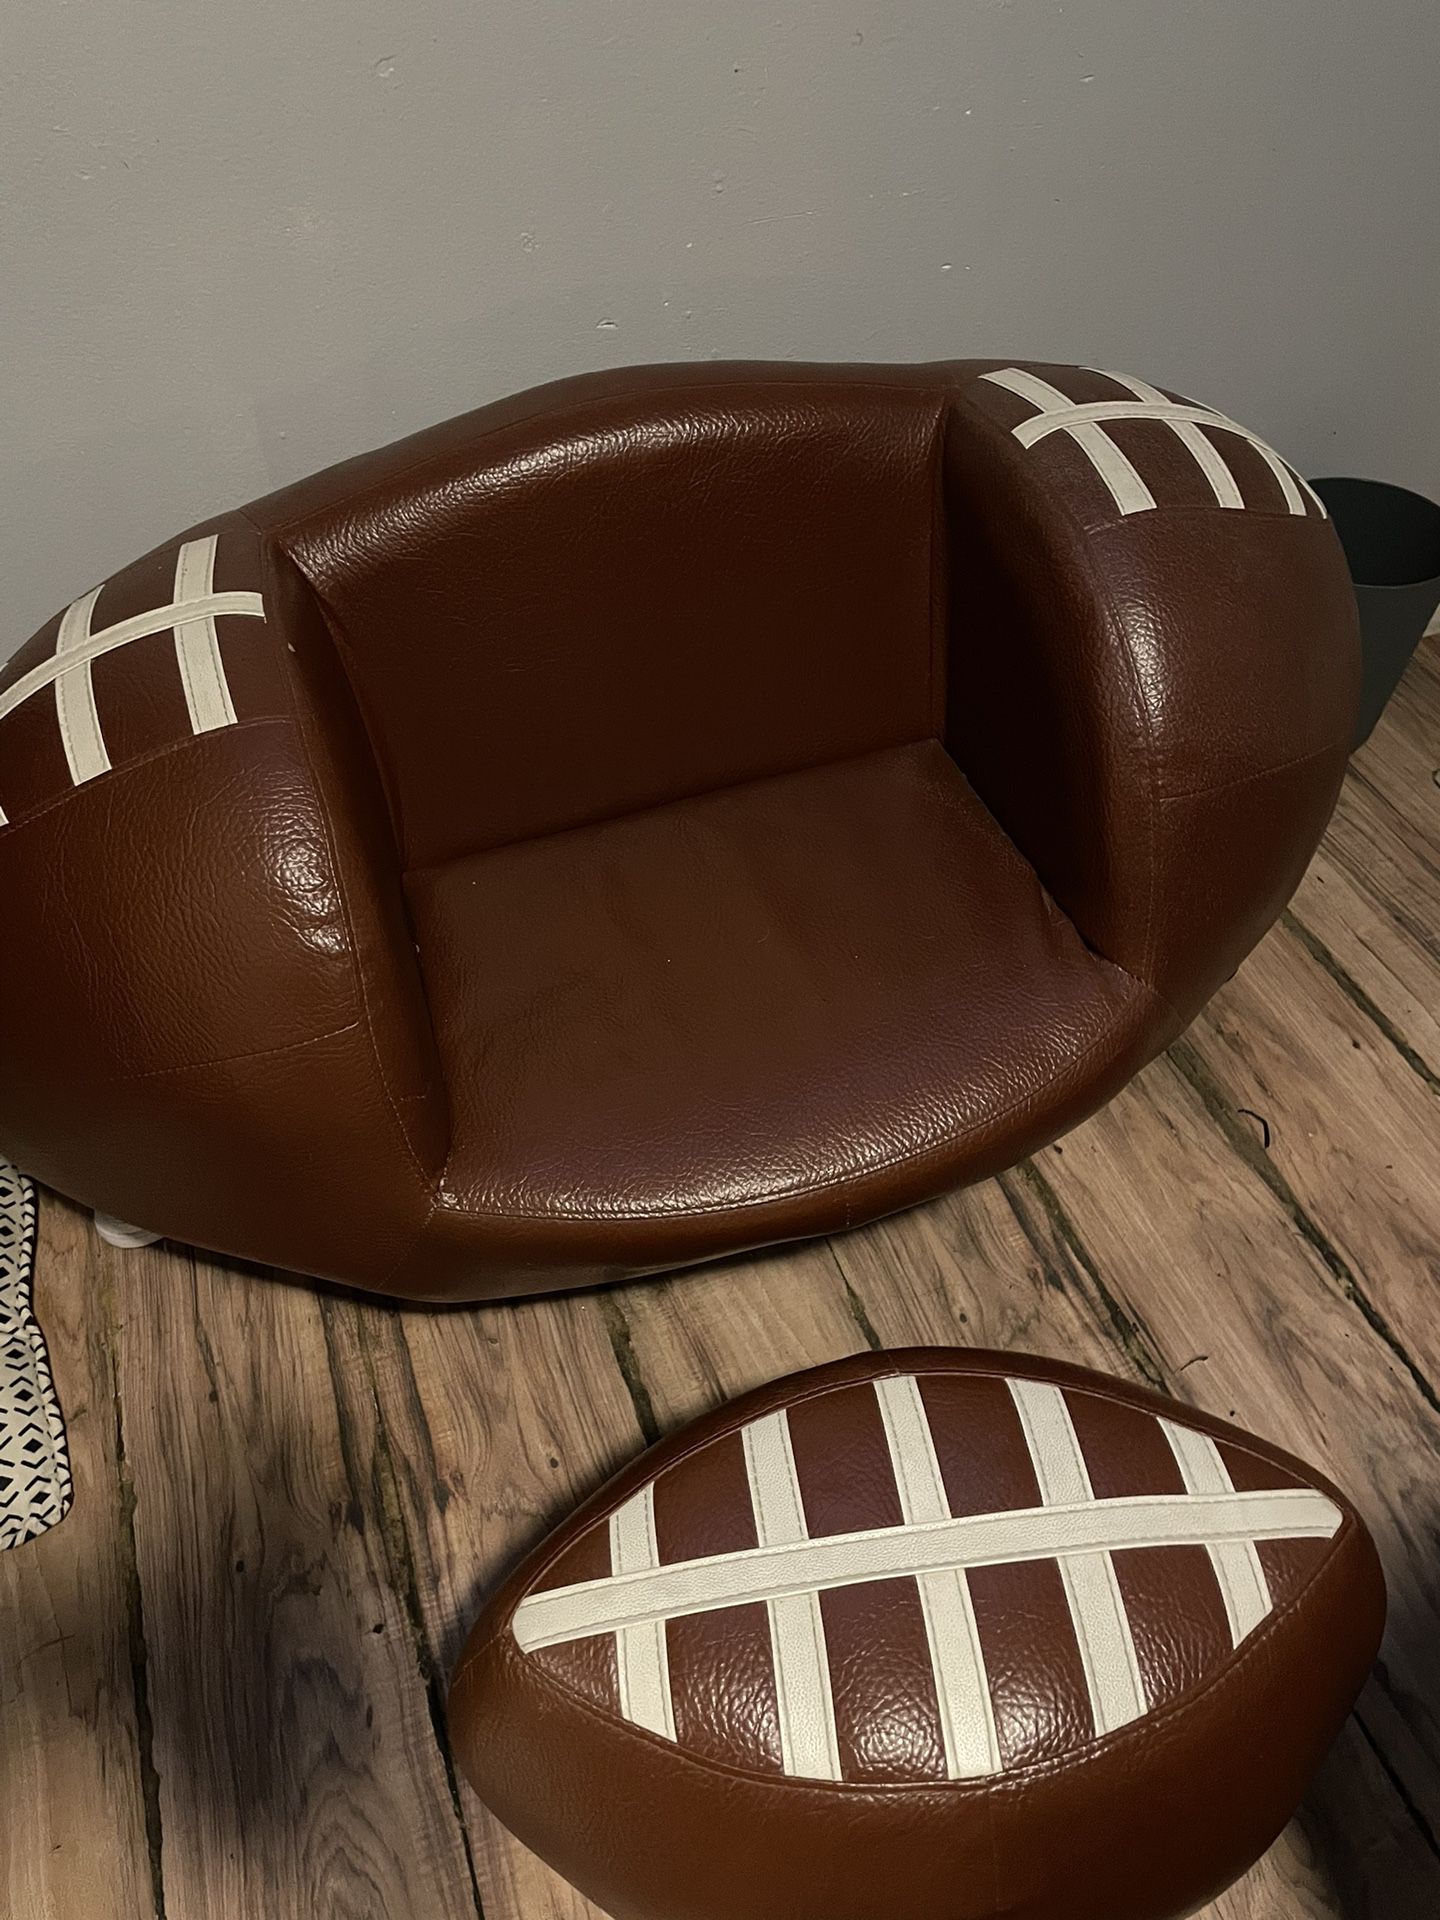 Football Chair 